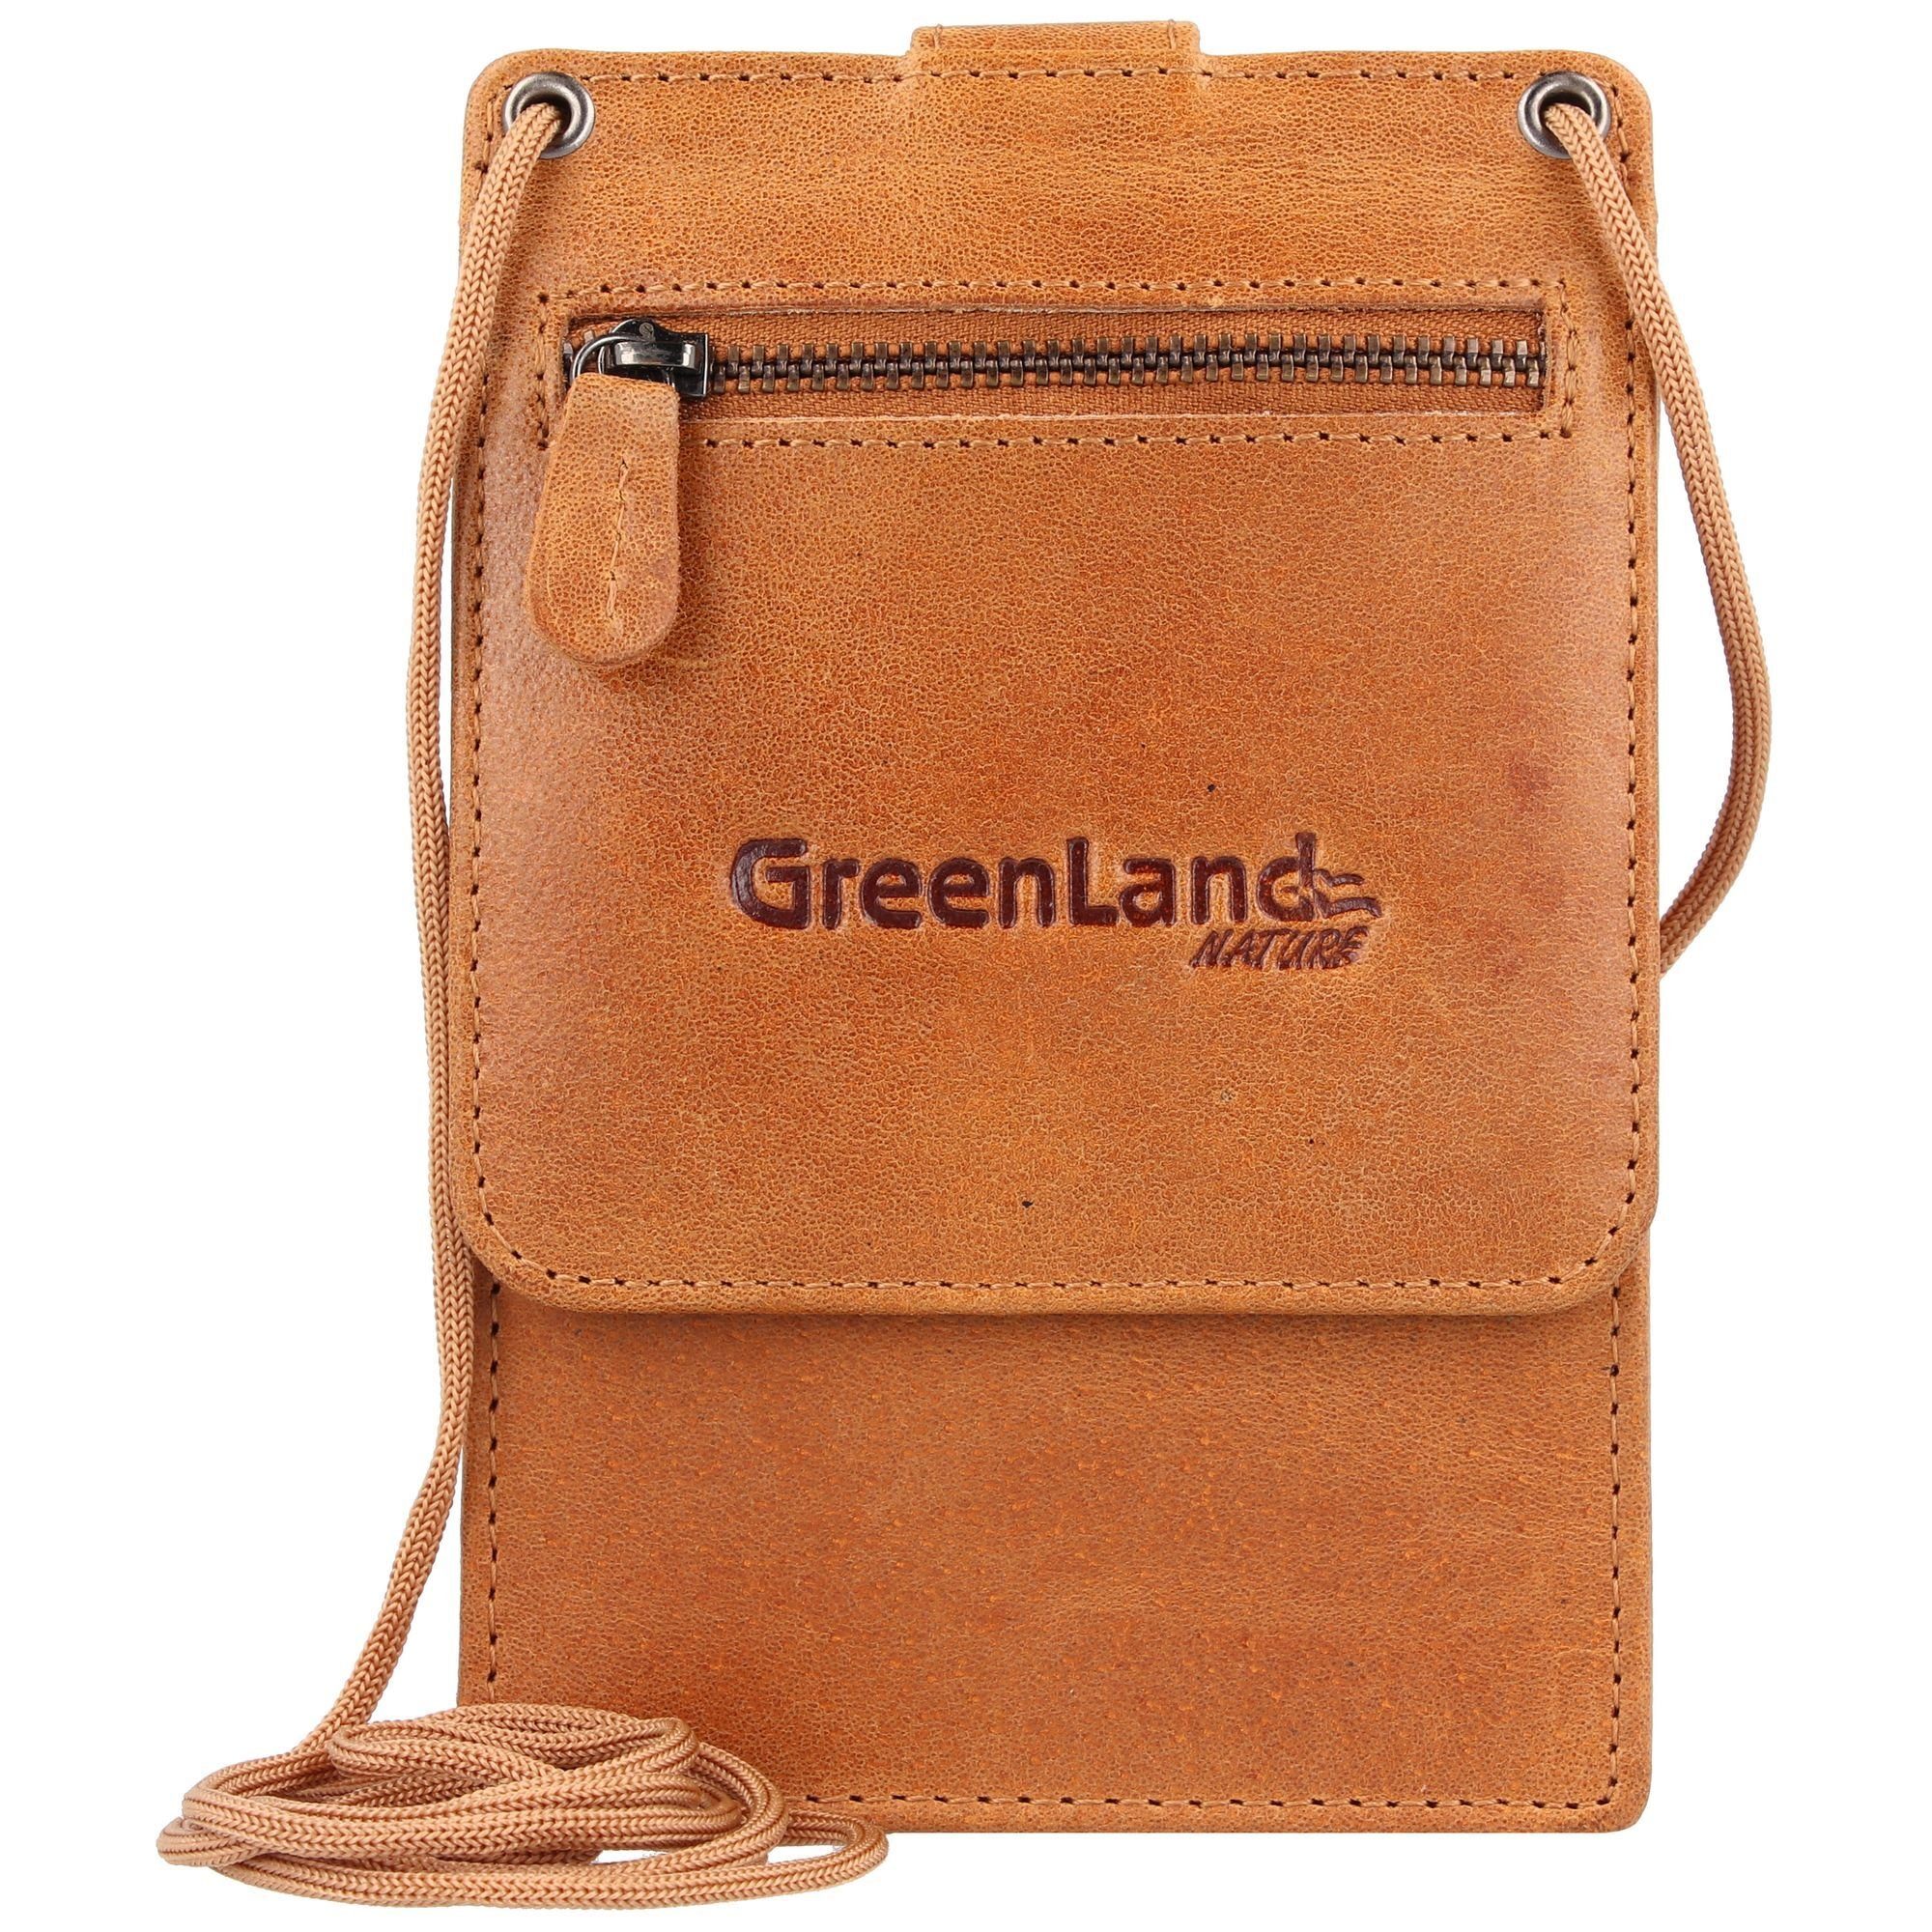 GreenLand Nature Kartenetui, mit RFID Technologie, Ausstattungen:  Reißverschlussfach, Tasche(n) außen